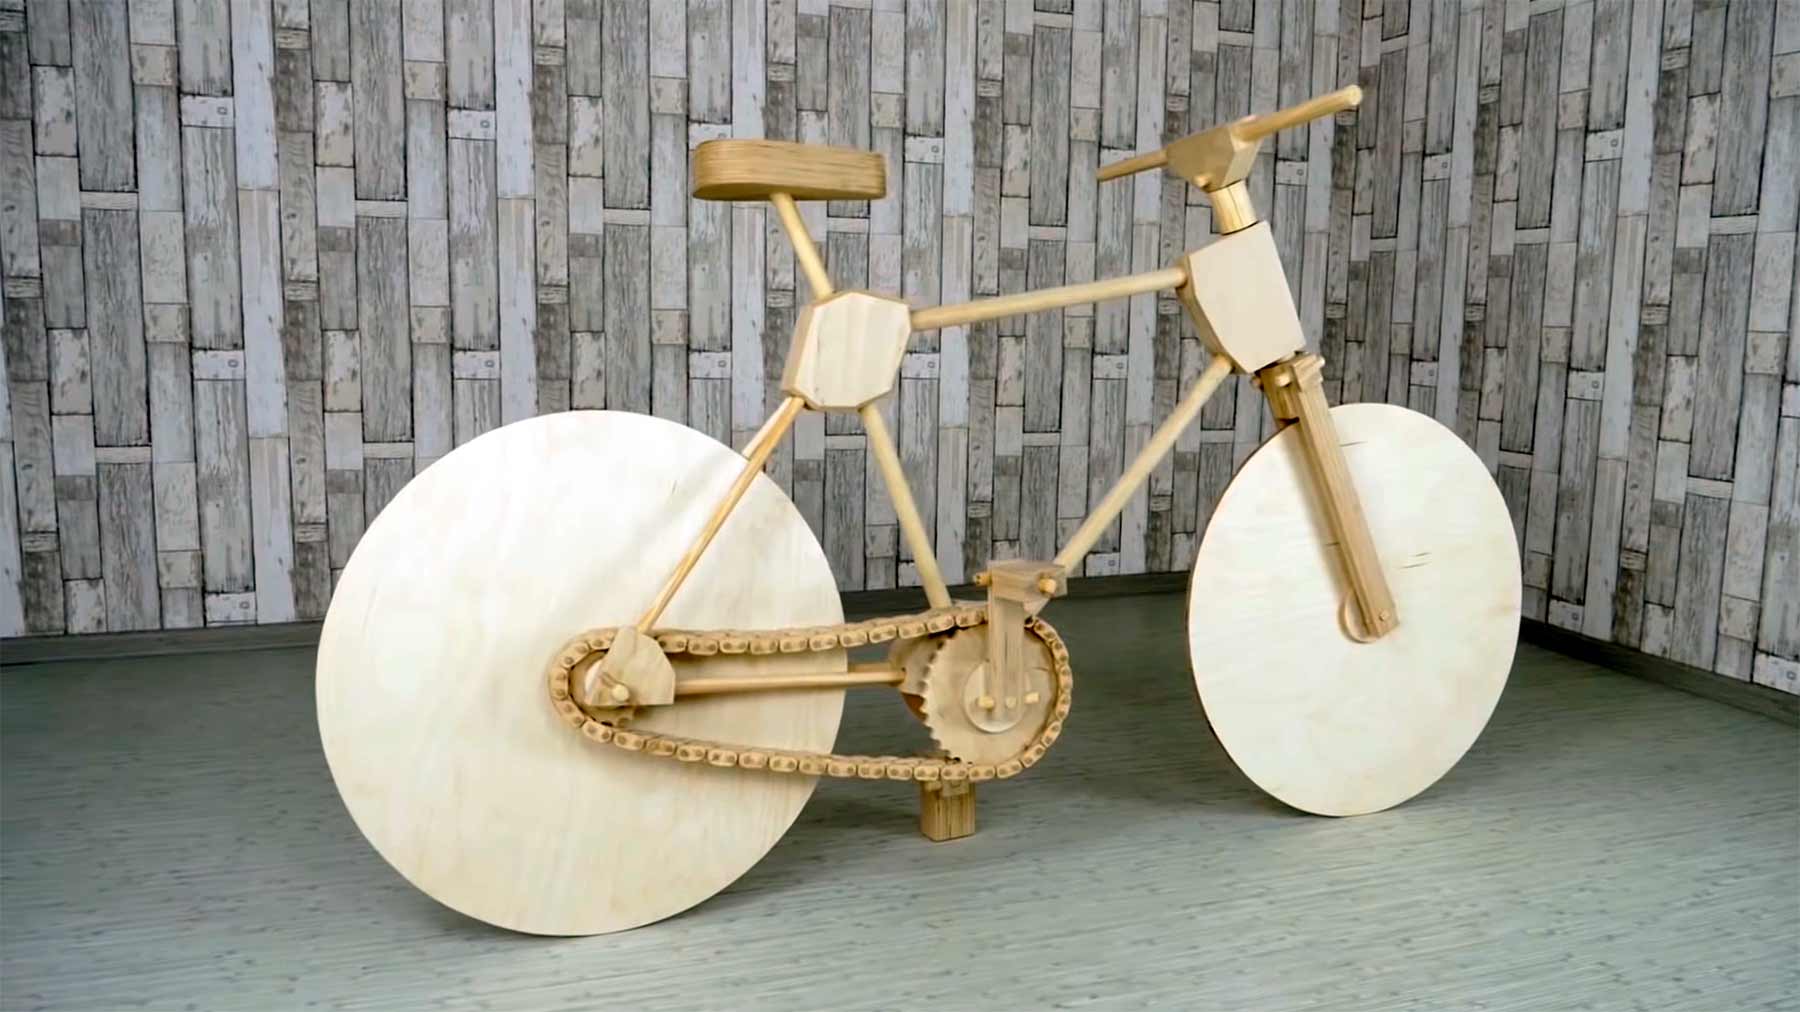 Ein Fahrrad komplett aus Holz bauen fahrrad-aus-holz-bauen 